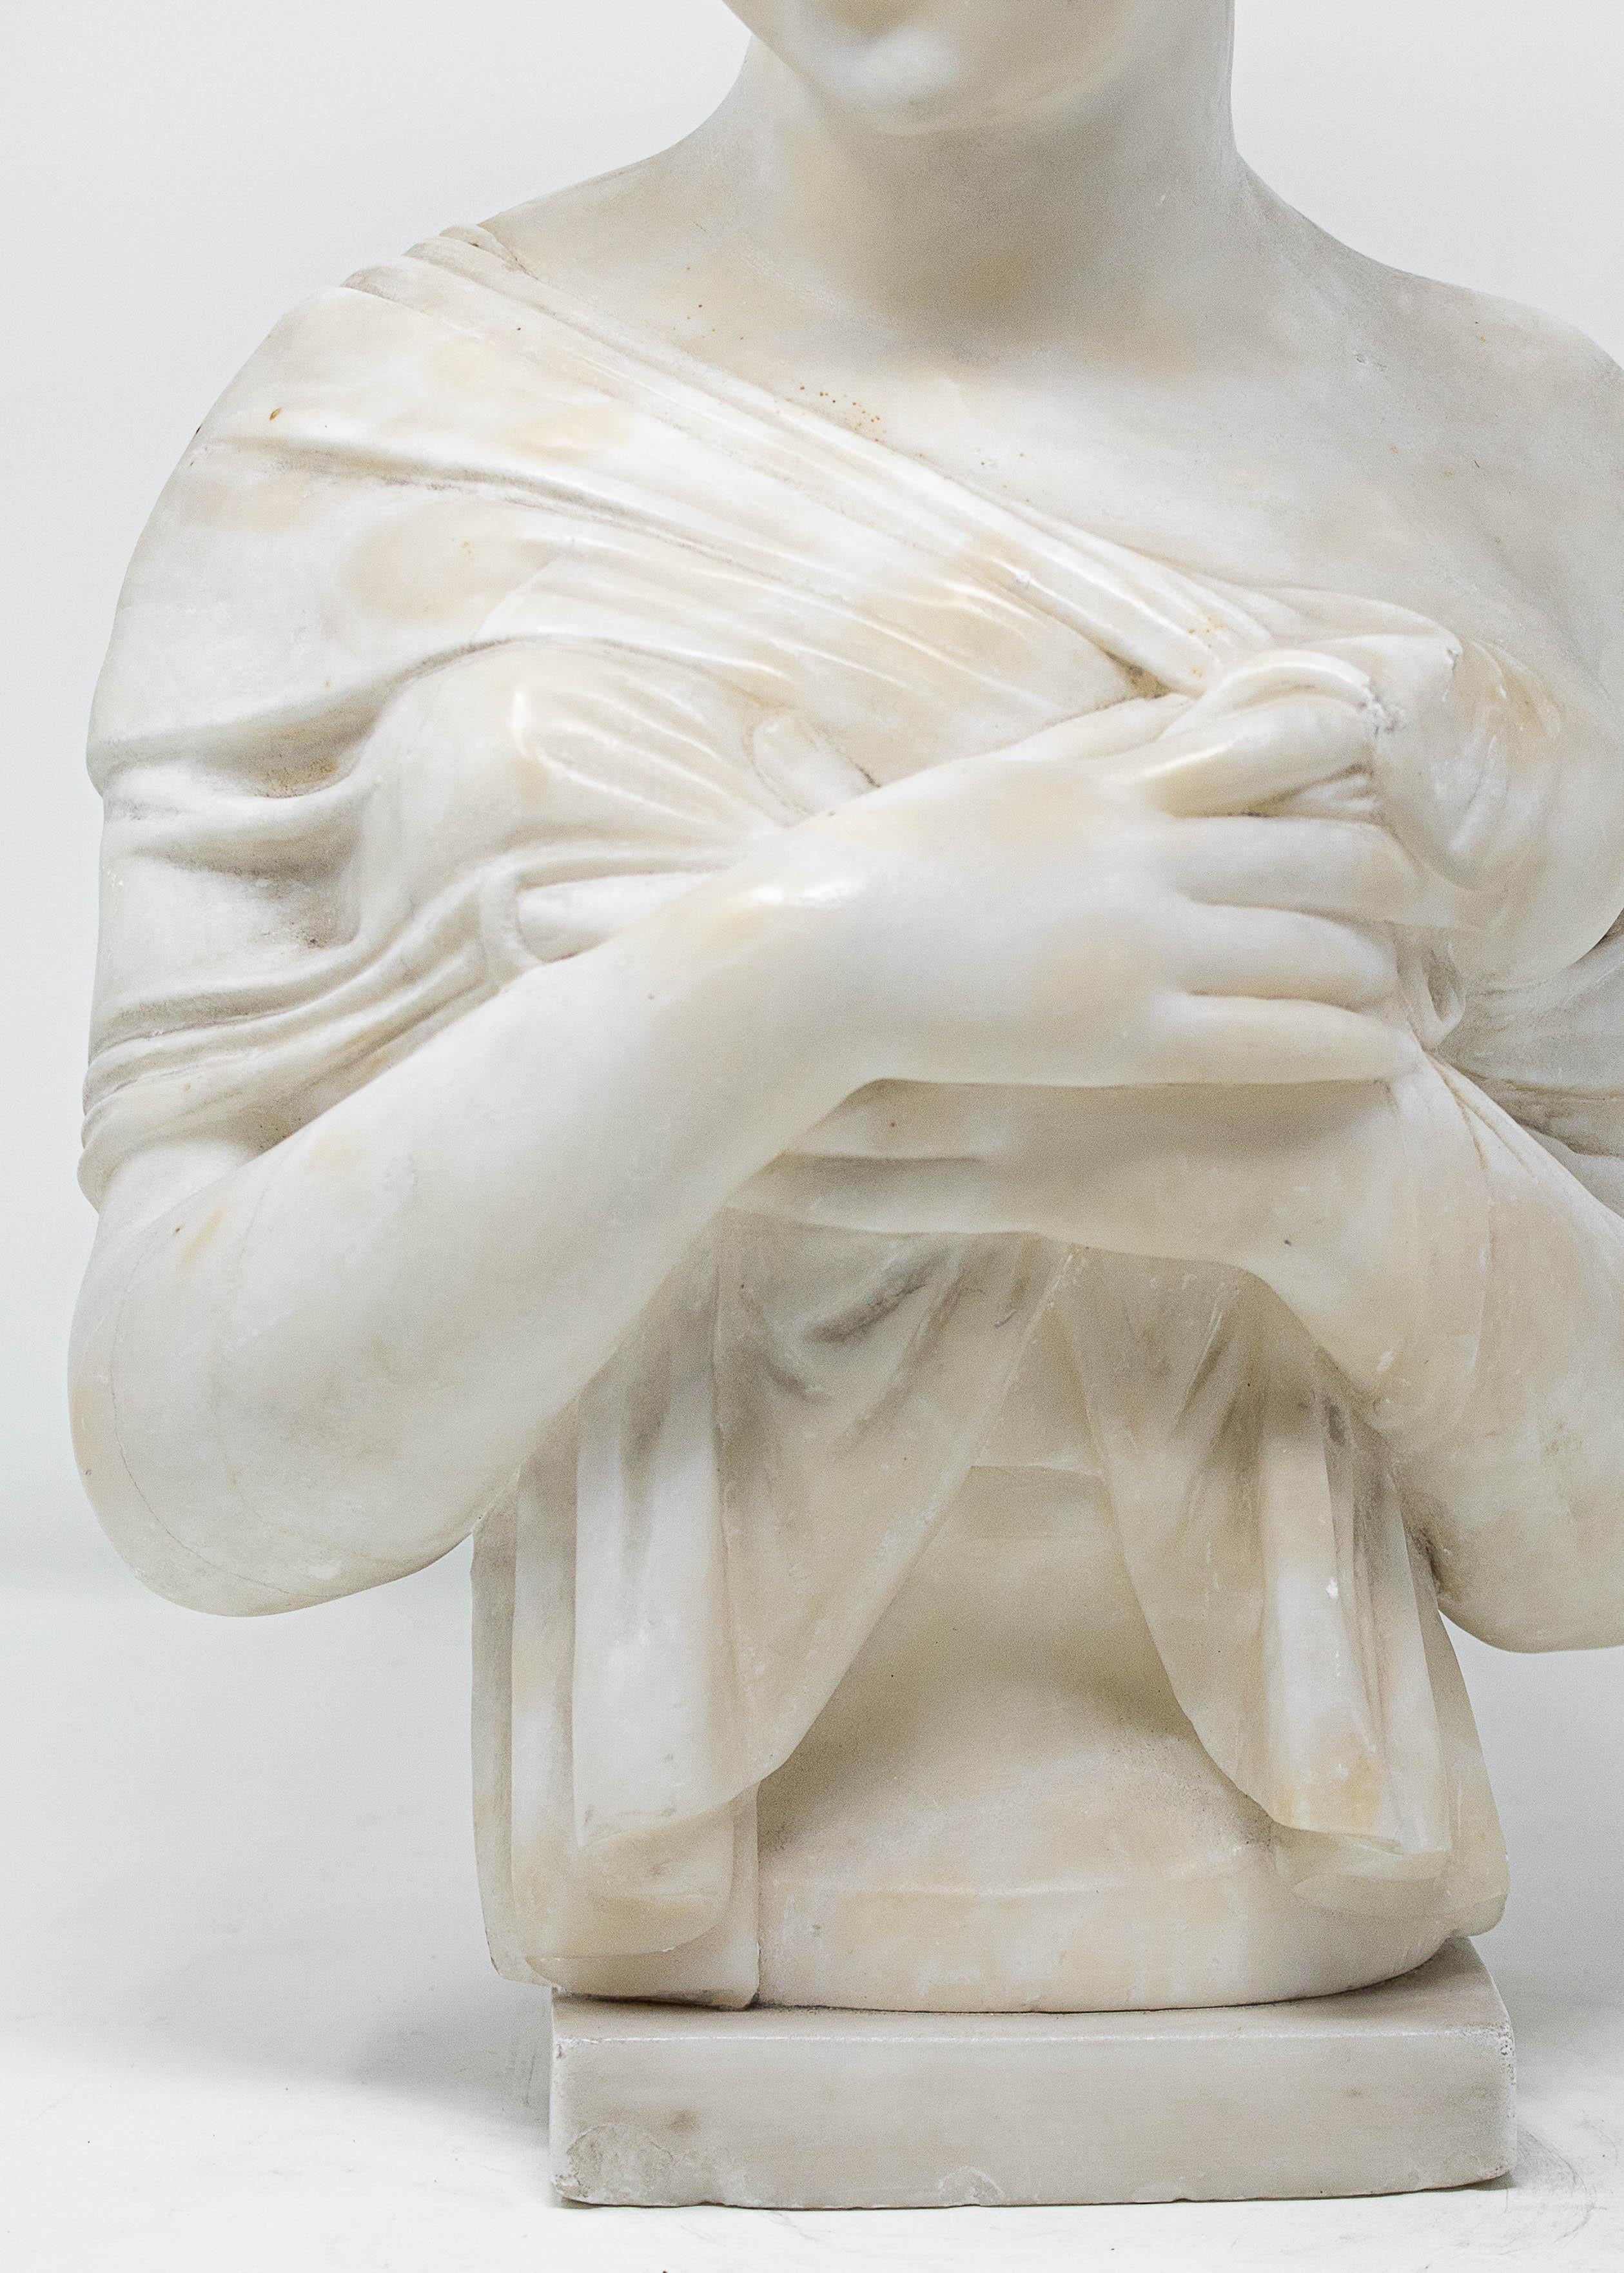 19. Jahrhundert

Büste von Juliette Récamier

Alabaster, 42 x 23 x 11 cm

Die Skulptur zeigt die Büste von Jeanne Françoise Julie Adélaïde Bernard, besser bekannt als Juliette Récamier oder Madame Récamier (Lyon, 3. Dezember 1777 - Paris, 11. Mai